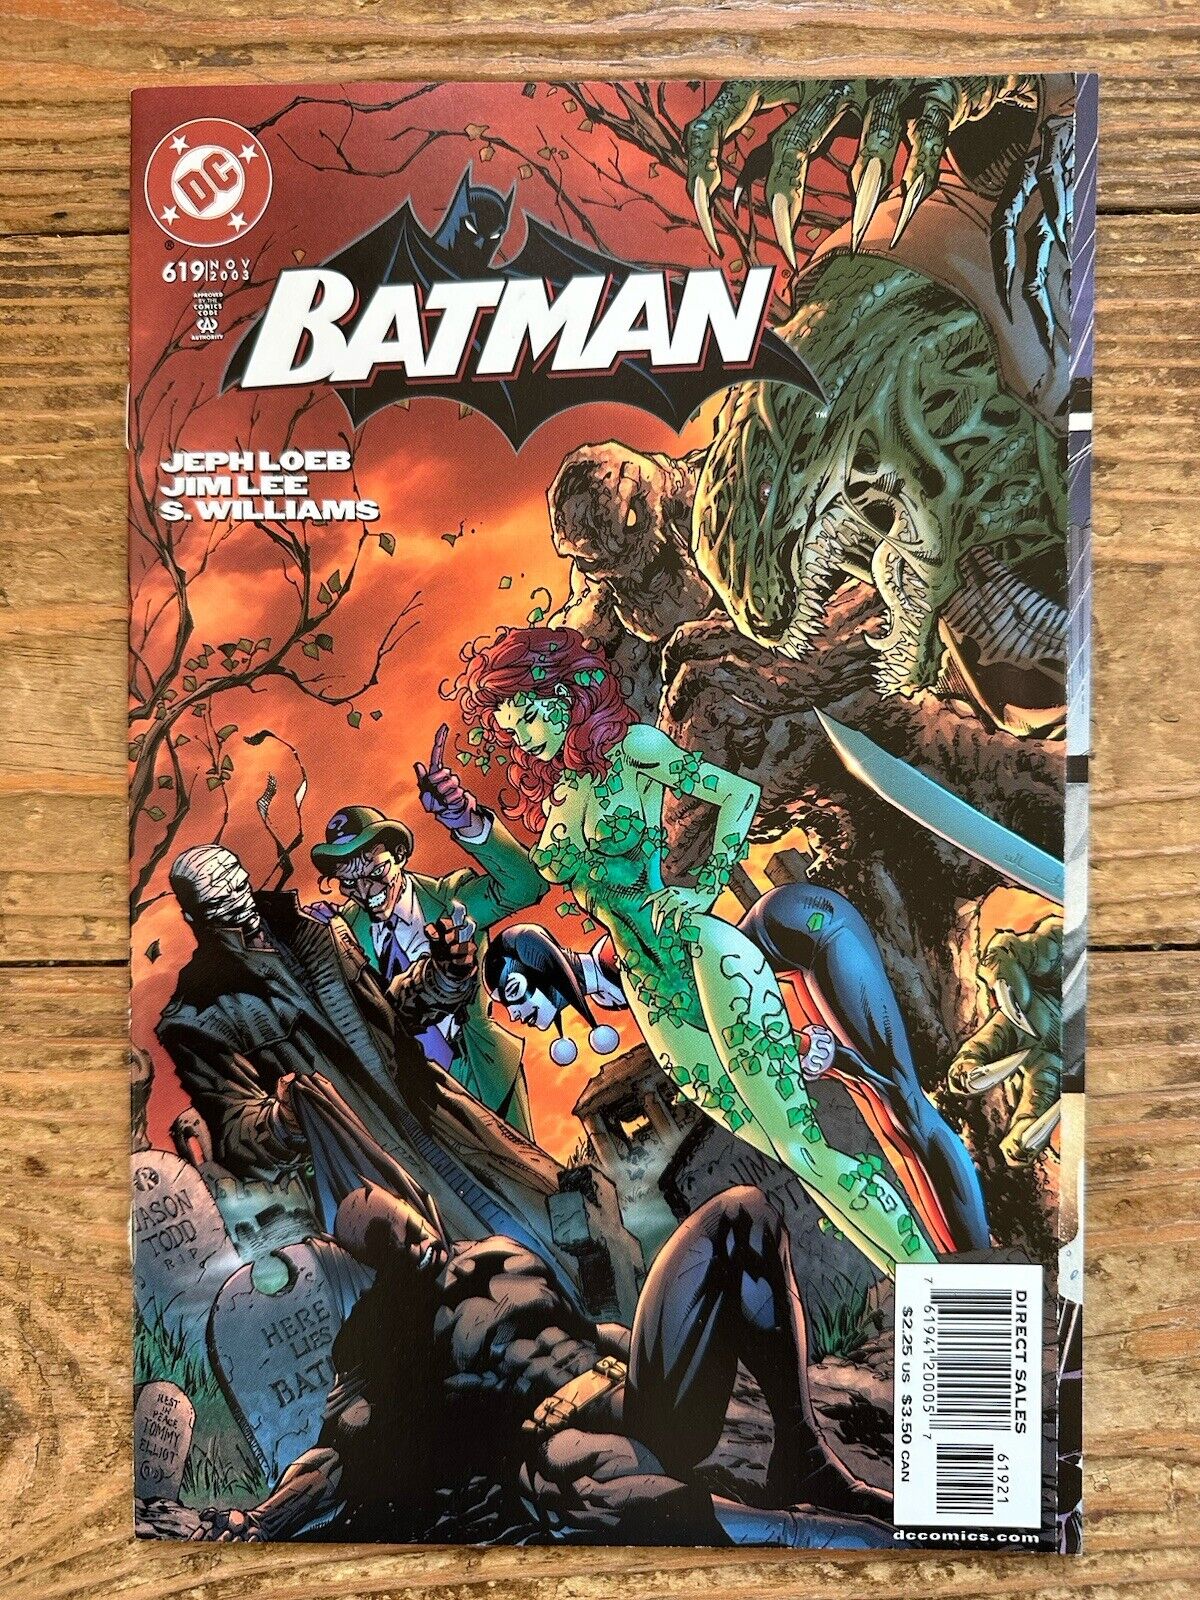 Batman 619 VF/NM 9.0 Jim Lee Variant Tri-Fold Villains Cover 2003 Modern Age DC